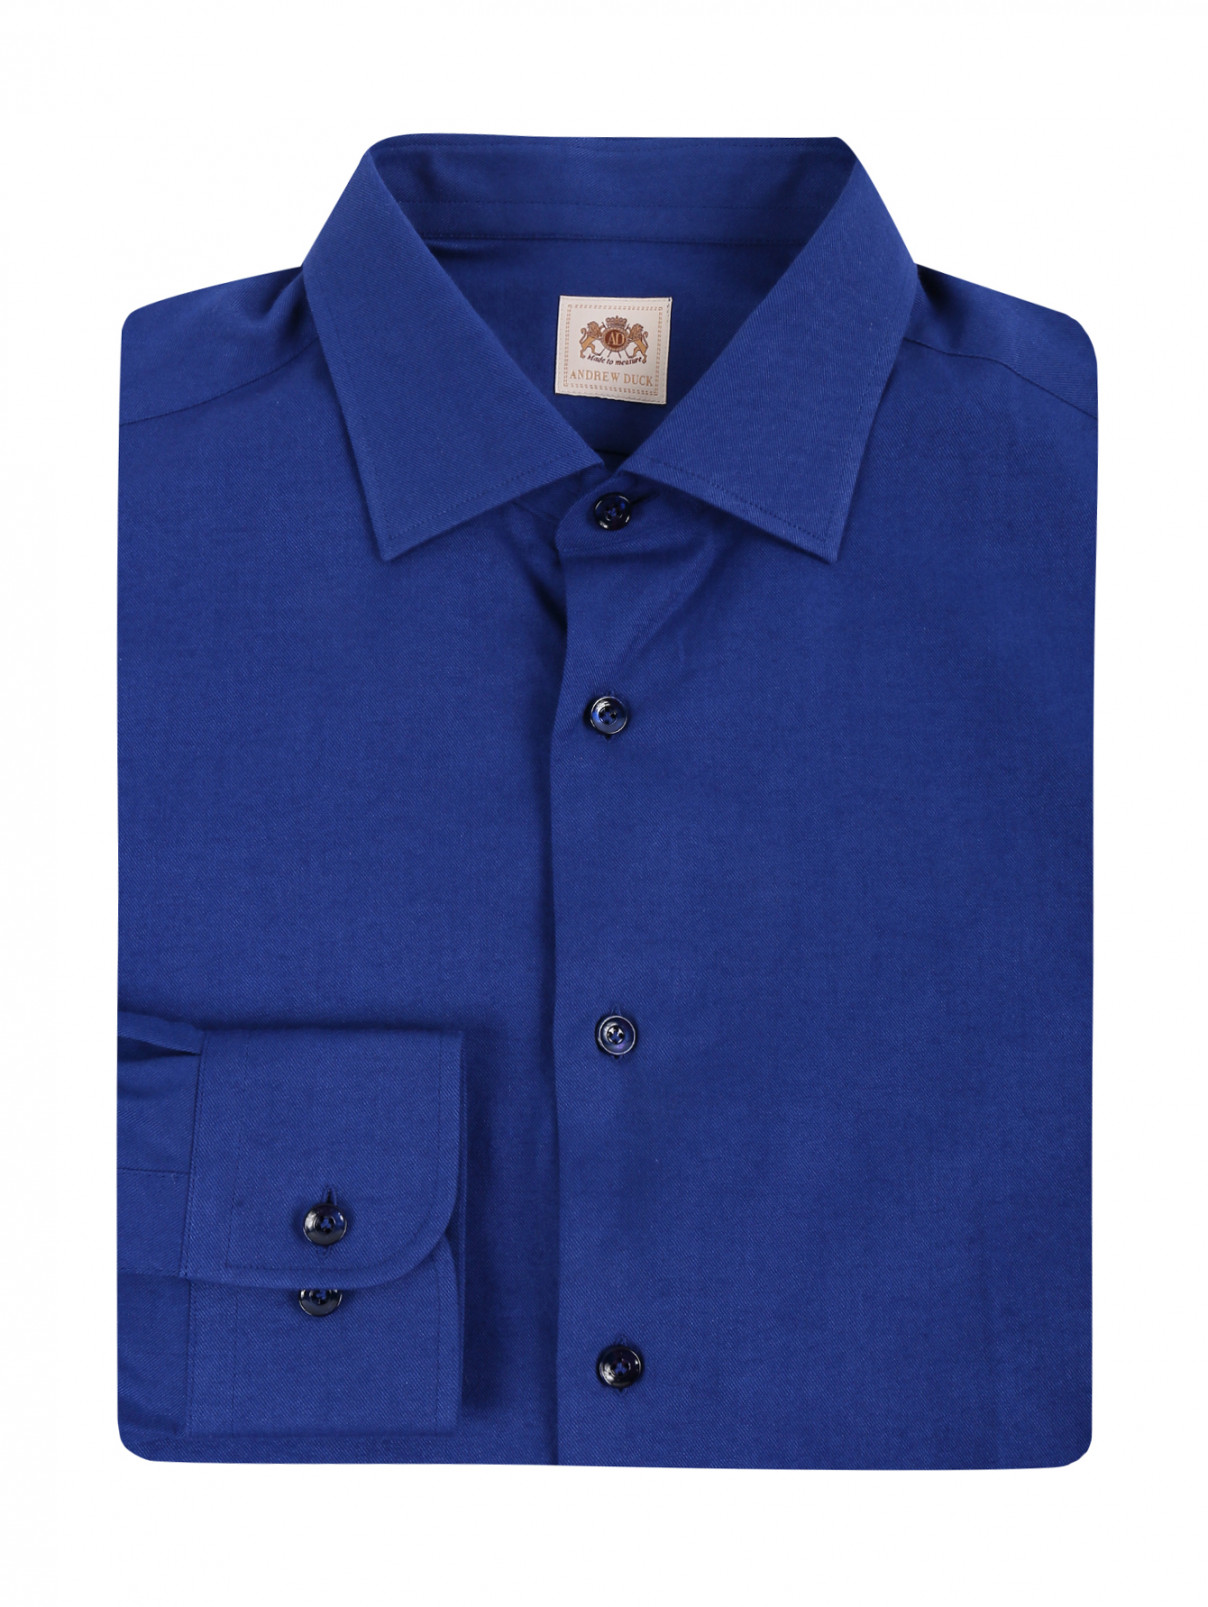 Рубашка из хлопка Andrew Duck  –  Общий вид  – Цвет:  Синий